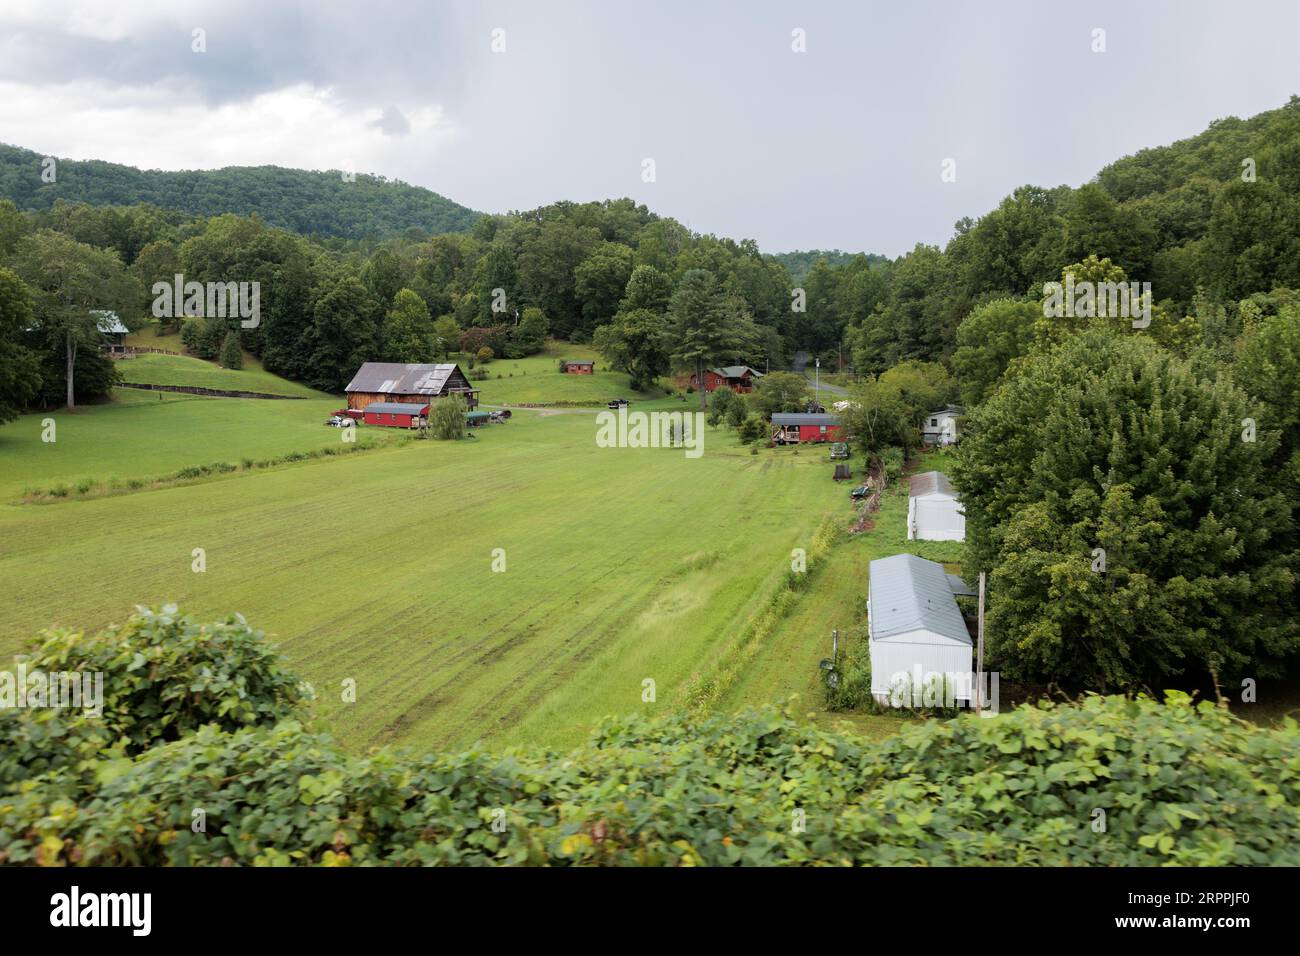 Kleine Familienfarm in den Bergen, die von der Open-Air-Bahn der Great Smoky Mountains Railroad auf ihrem Ausflug von Bryson City, North Carolina aus gesehen wird Stockfoto